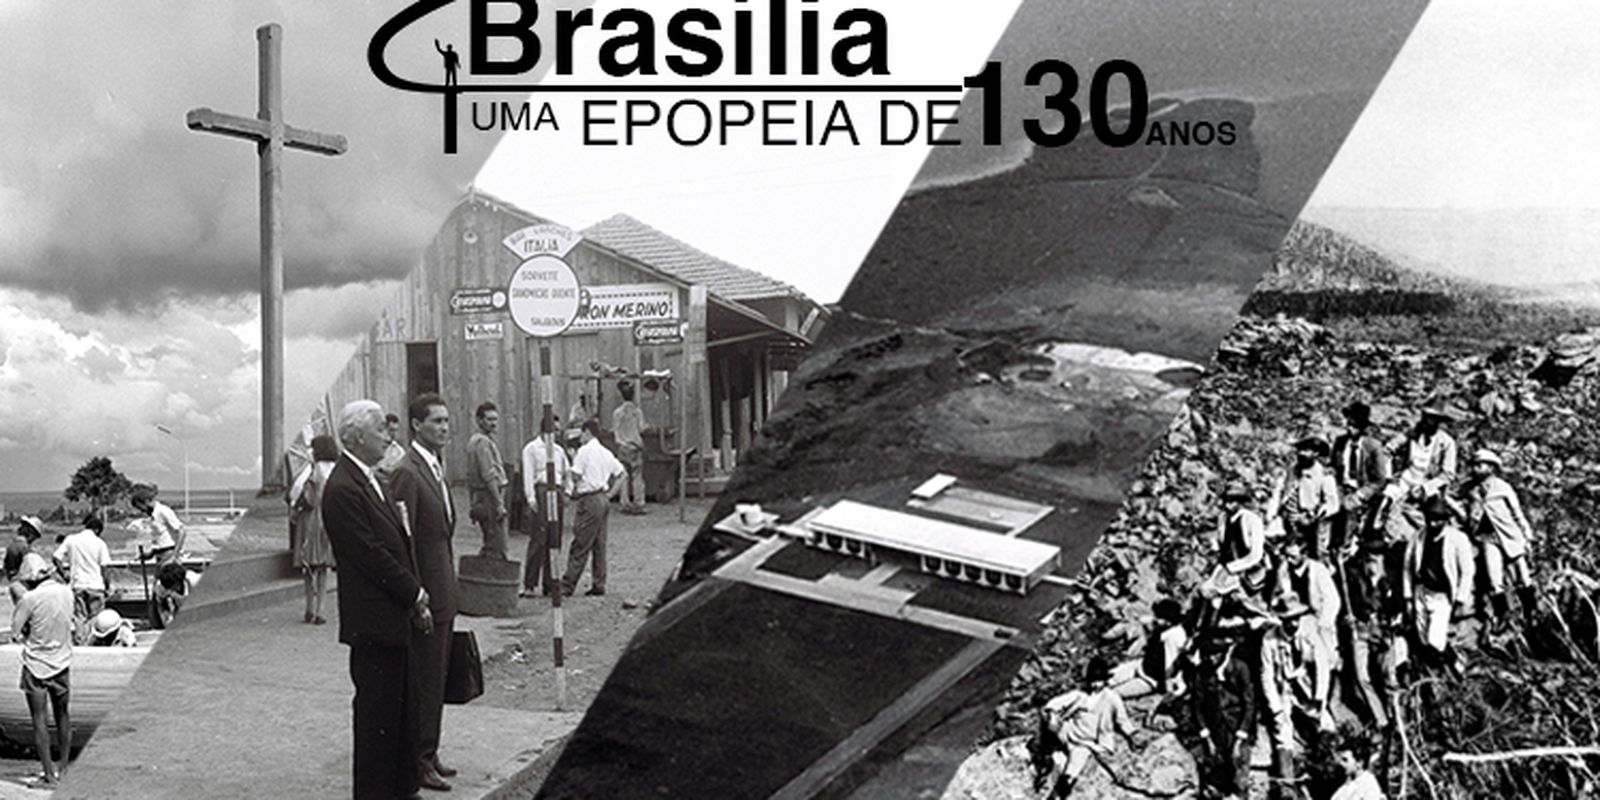 Arquivo de Evangelho - Brasília-DF